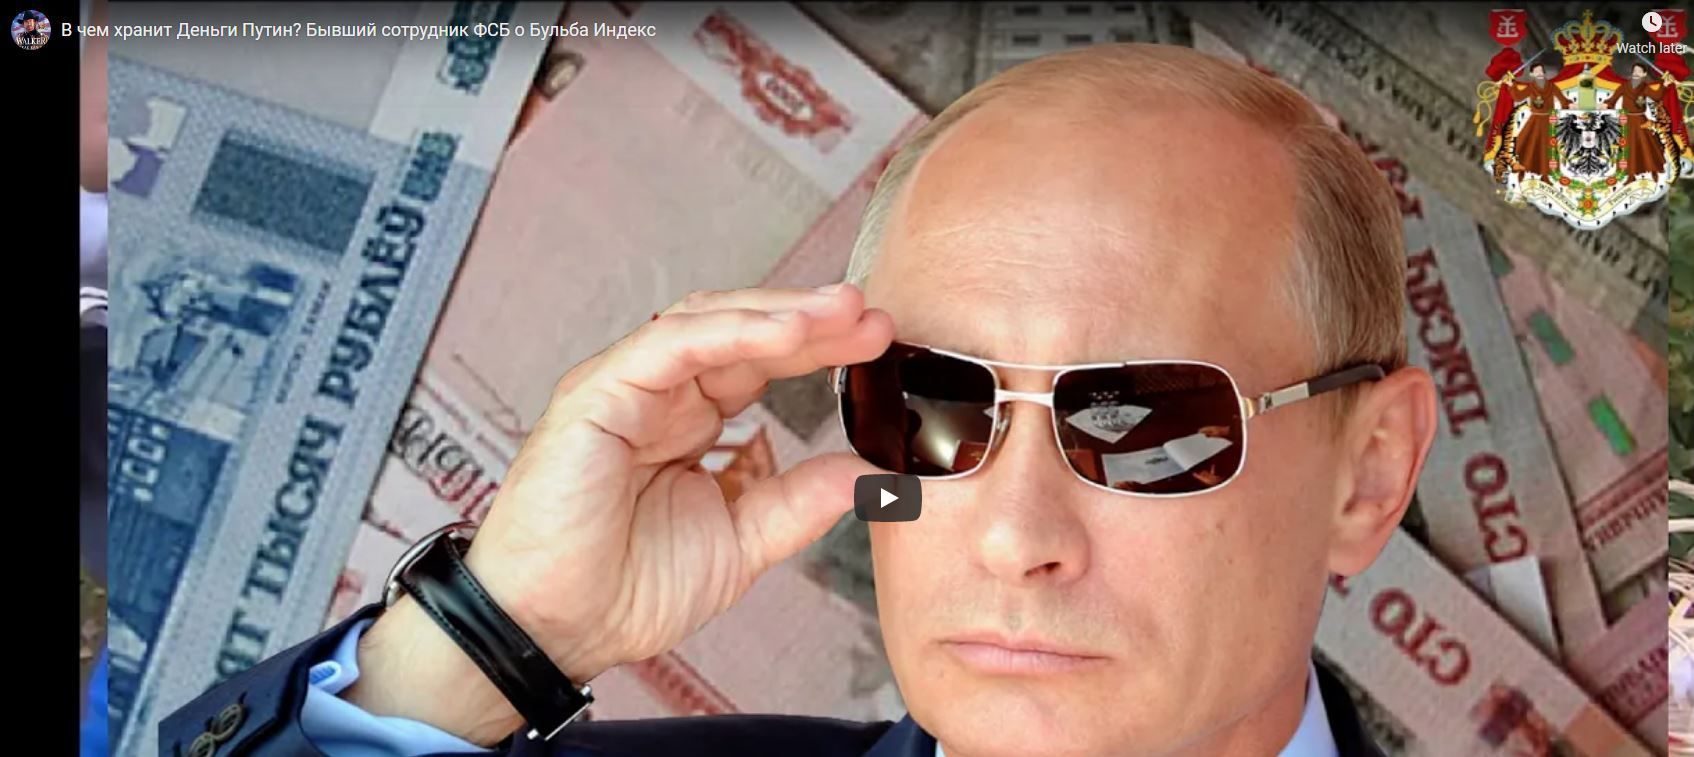 В чем хранит Деньги Путин? Бывший сотрудник ФСБ о Бульба Индекс